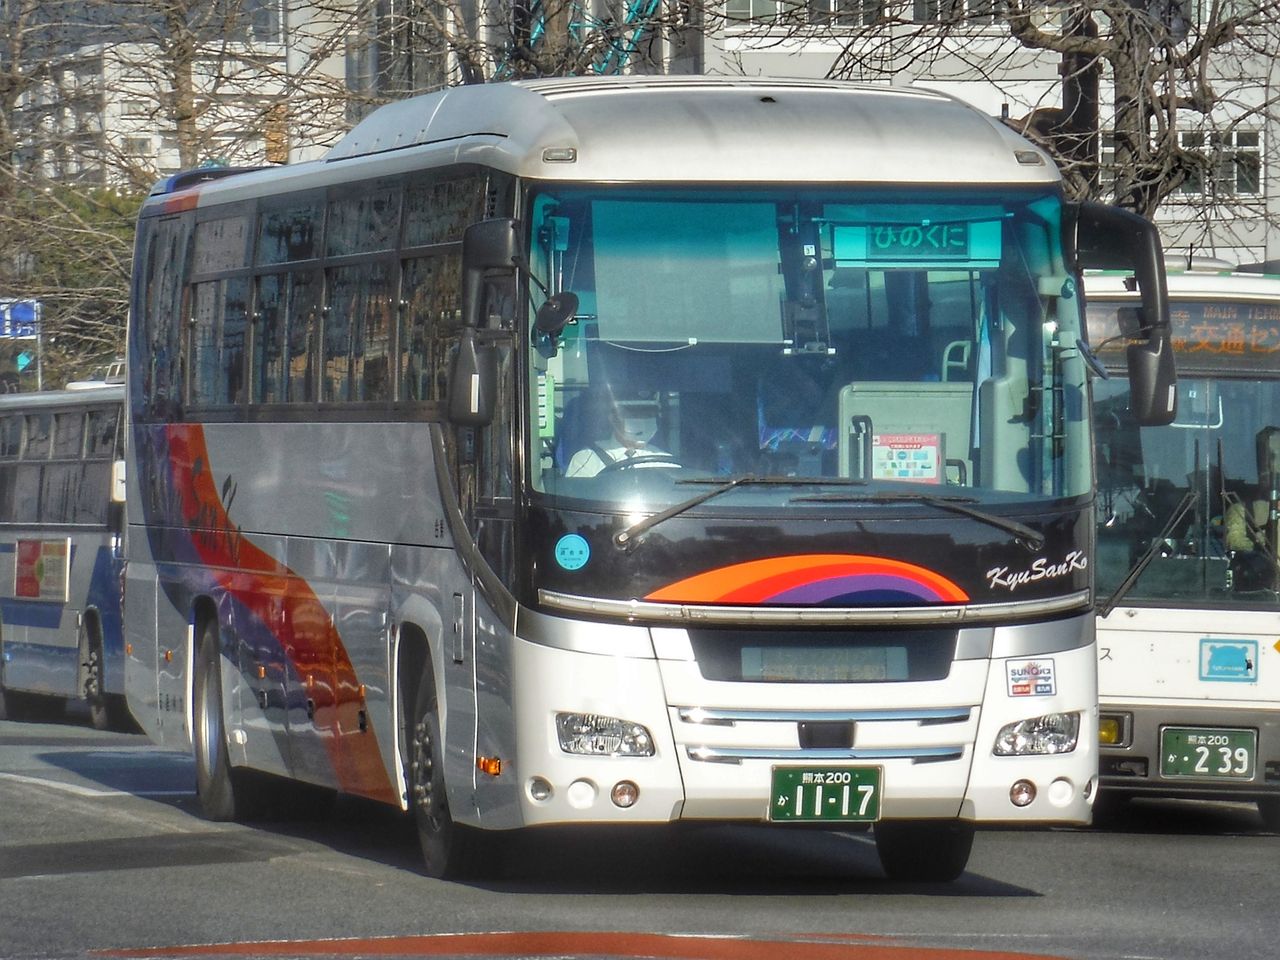 九州産交バス 熊本0か1117 ｂｕｓ画像館熊本 障害者手帳アプリ ミライロid が産交バス 熊本電鉄 電車 バス 熊本バス 熊本都市バスでも利用できるようになりました